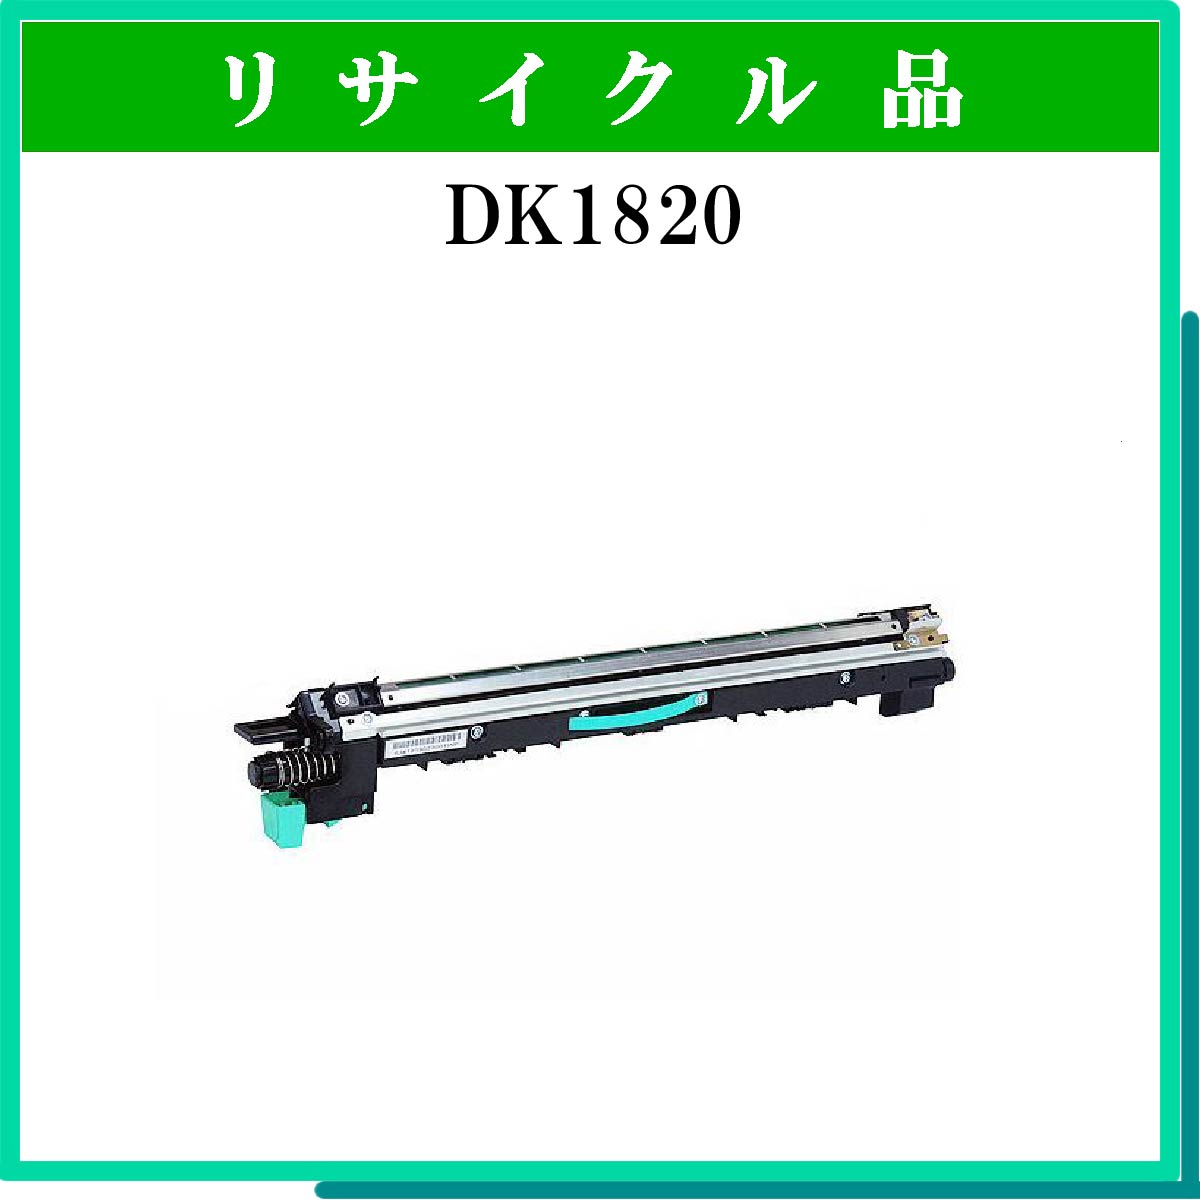 DK1820